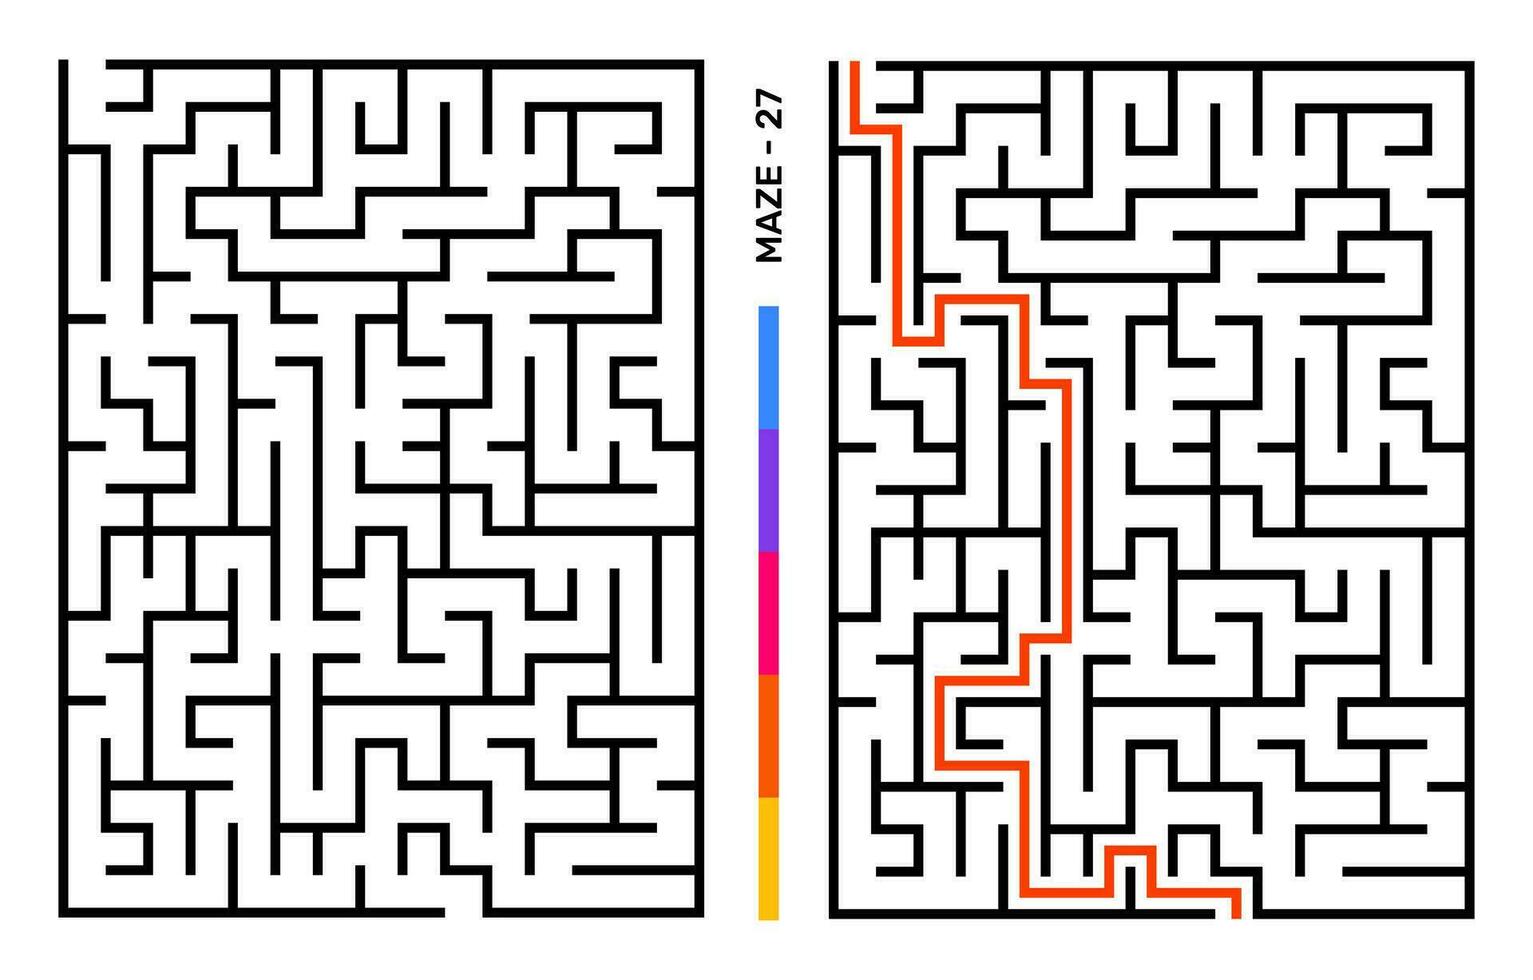 abstrakt labyrint pussel labyrint med inträde och utgång. labyrint för aktivitet bok. problemlösning pussel spel för arbetsbok. vektor illustration - eps 10